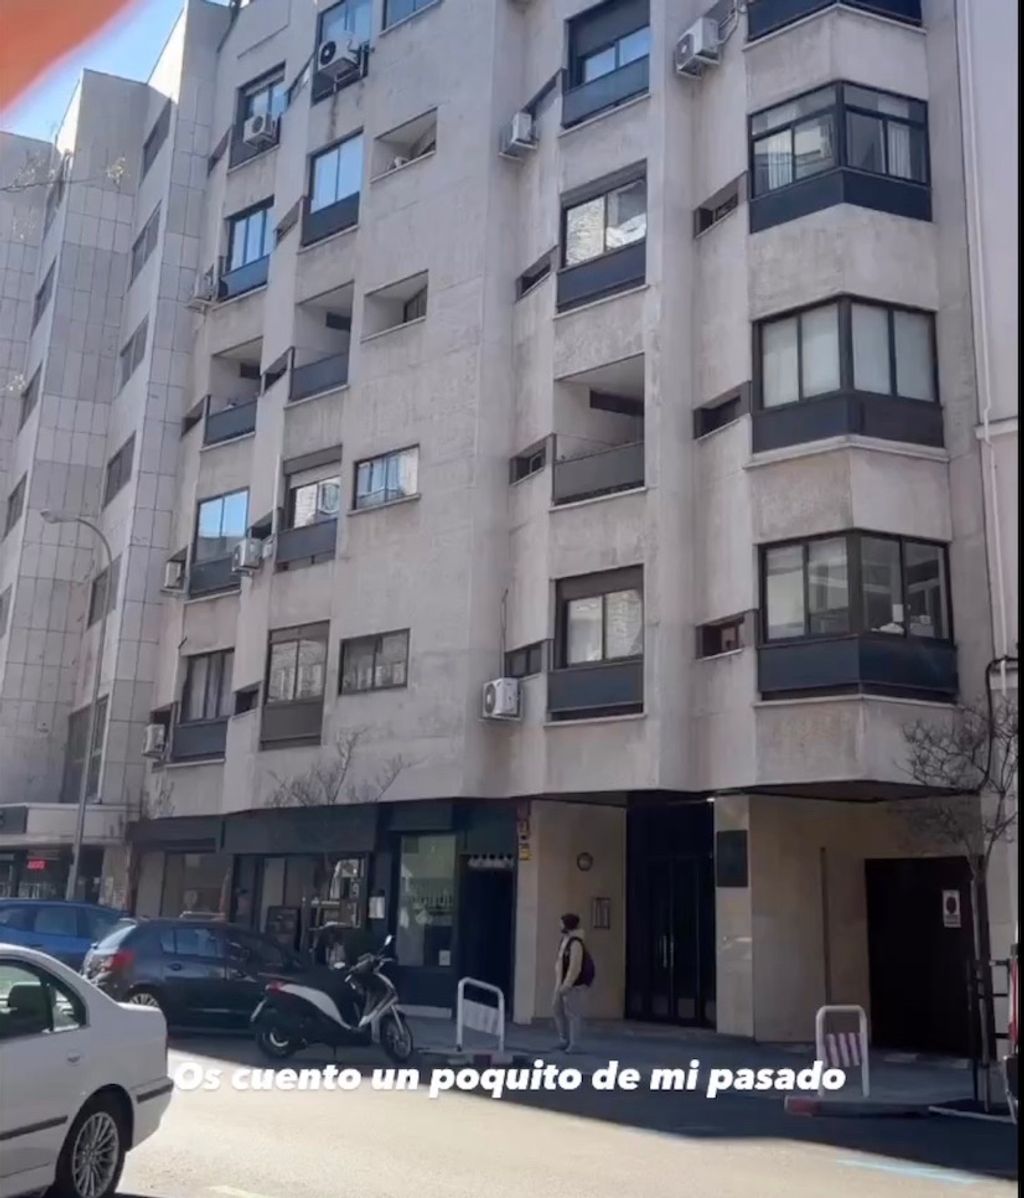 La primera casa de Estefi y Aritz en Madrid